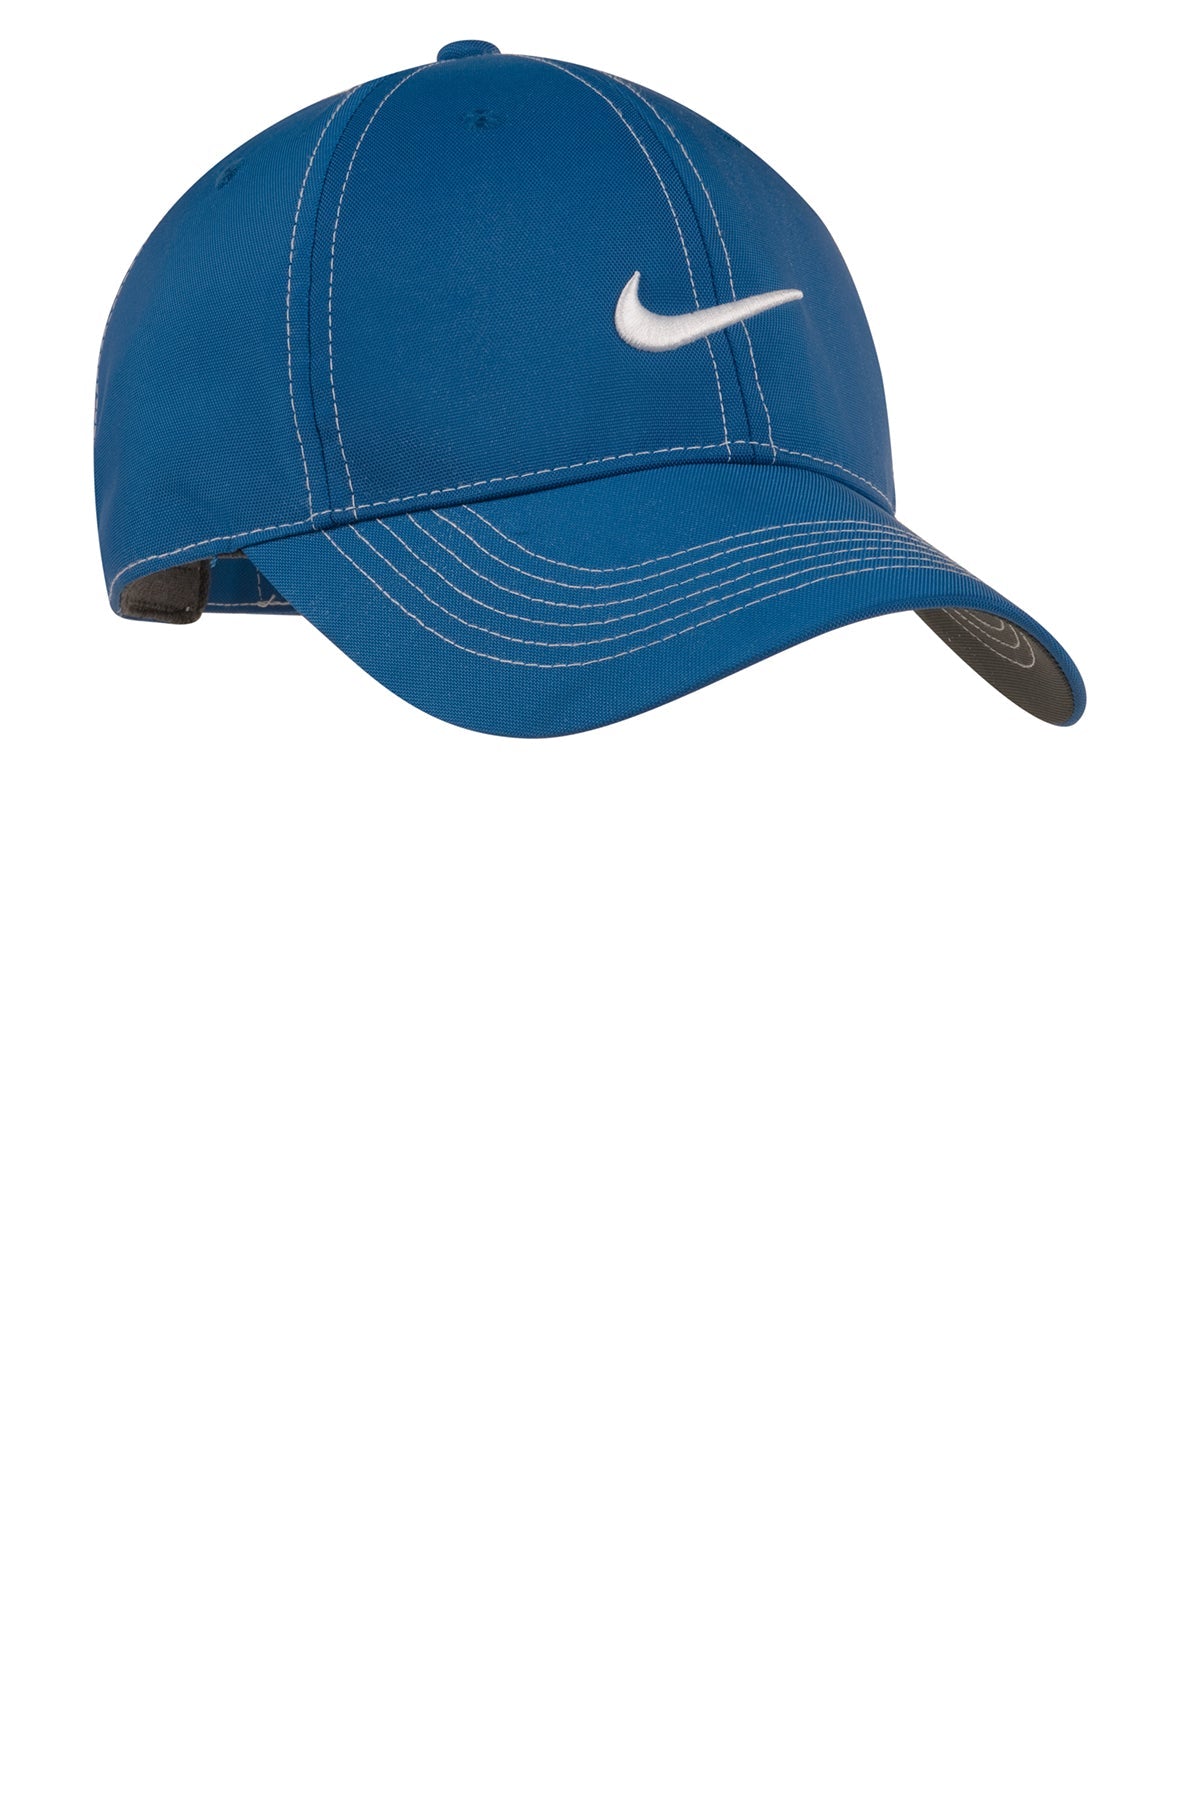 Nike Swoosh Front Customized Caps, Varsity Royal